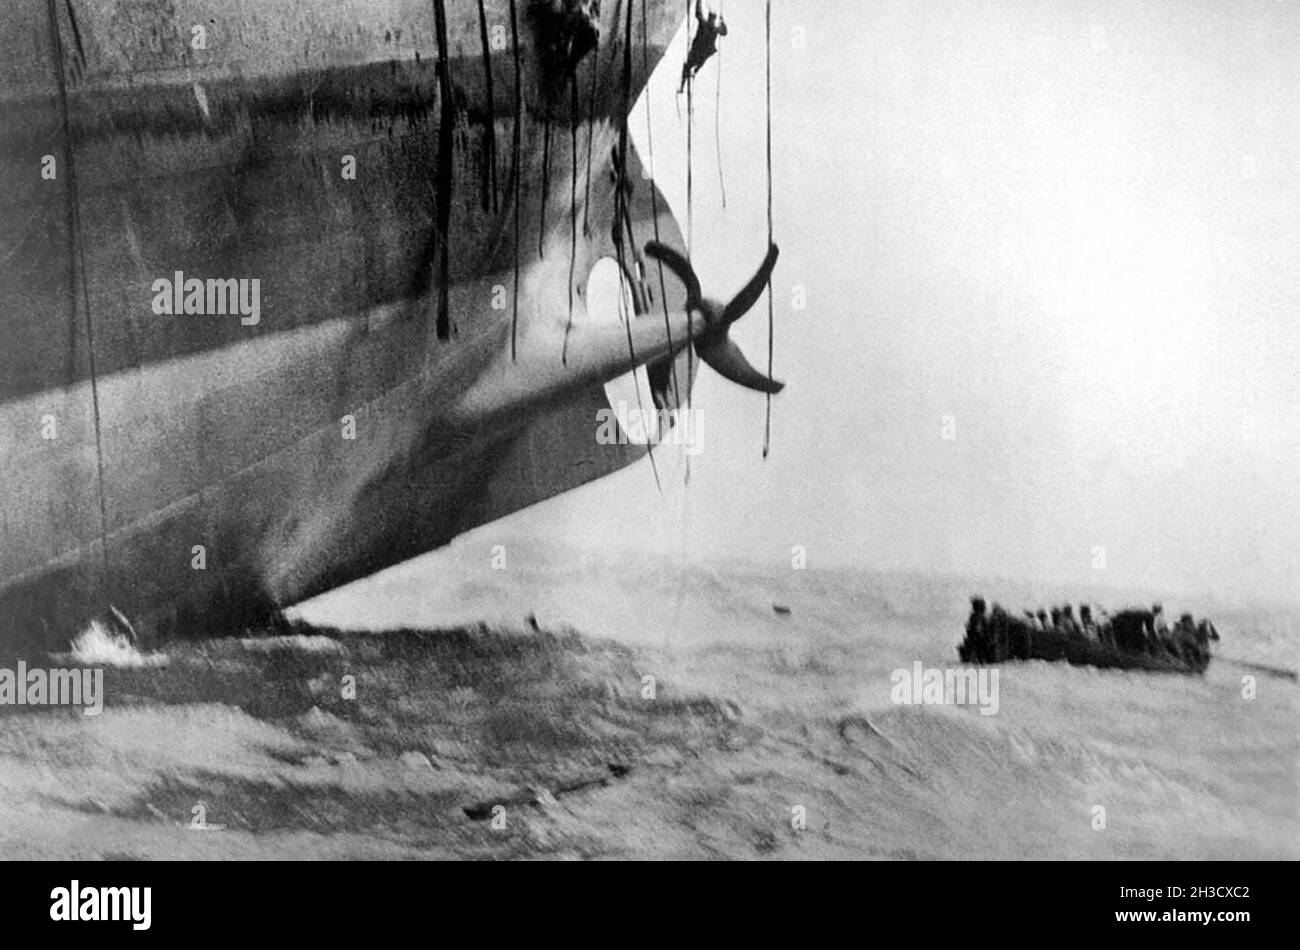 Une photo spectaculaire d'un bateau de sauvetage s'éloignant d'un navire en naufrage.La poupe du navire est dans l'air et les derniers membres de l'équipage peuvent être vus en descendant les cordes. Banque D'Images